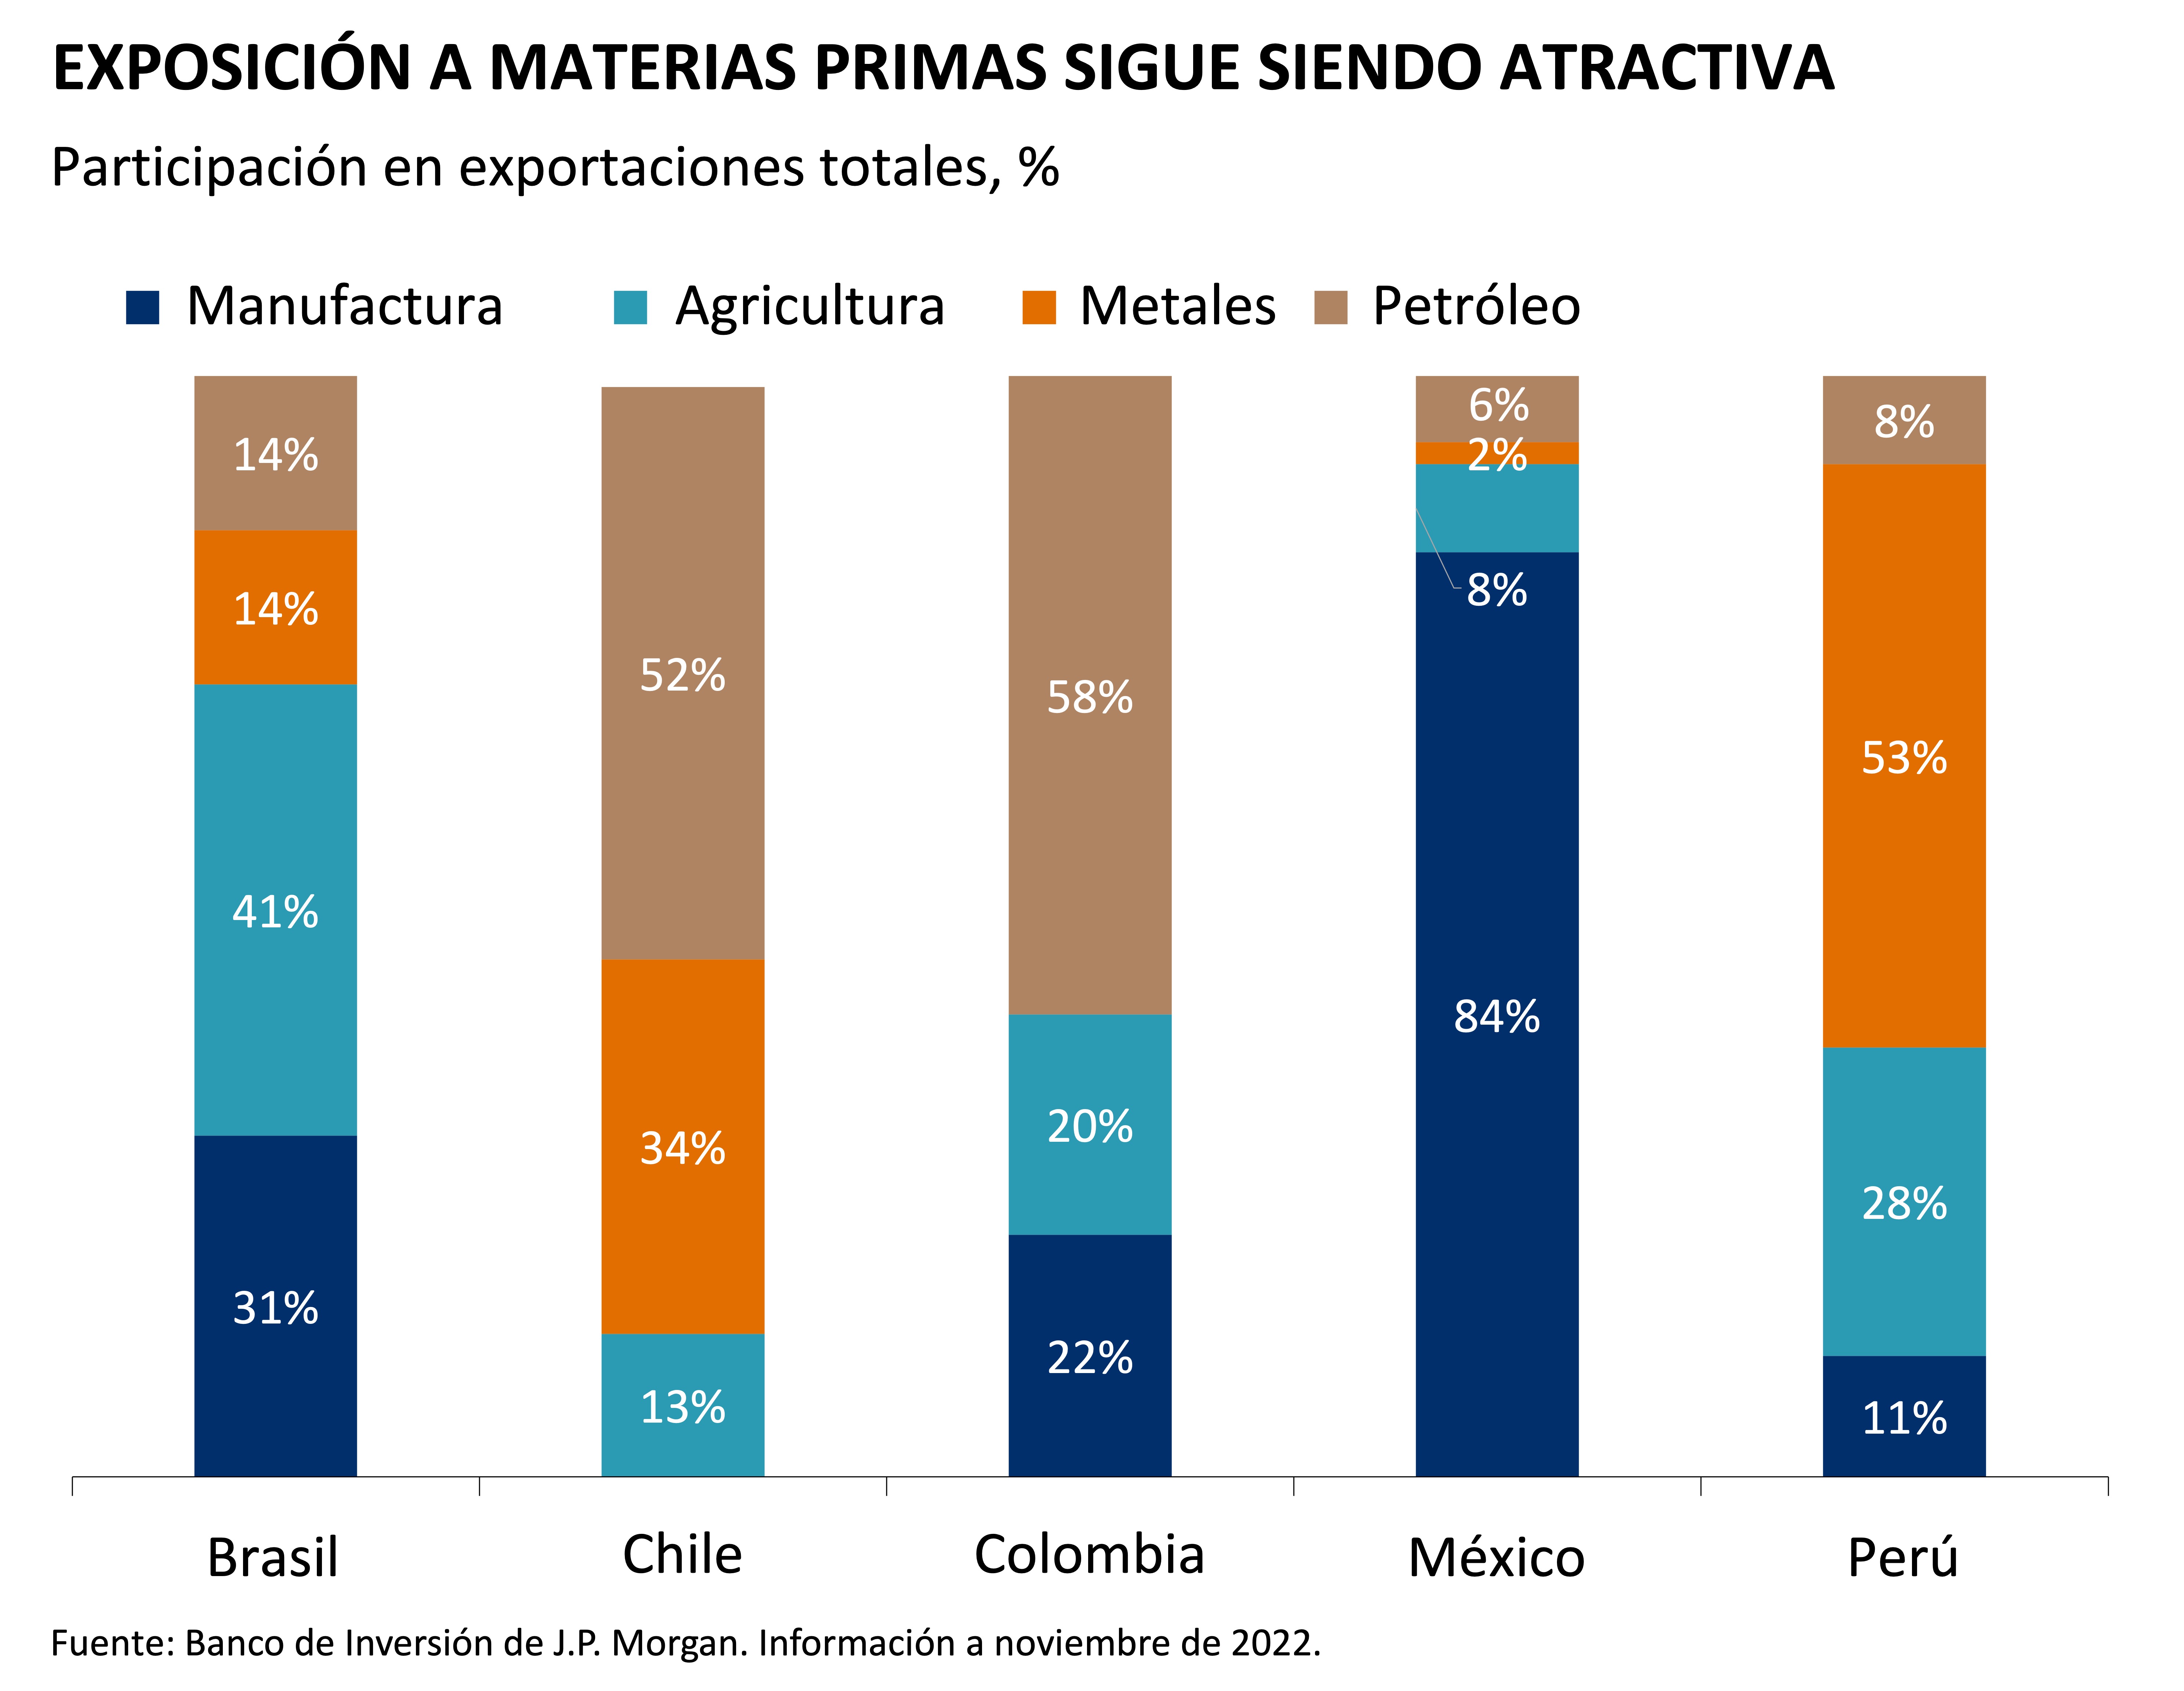 Participación en exportaciones totales, %, de países de América Latina